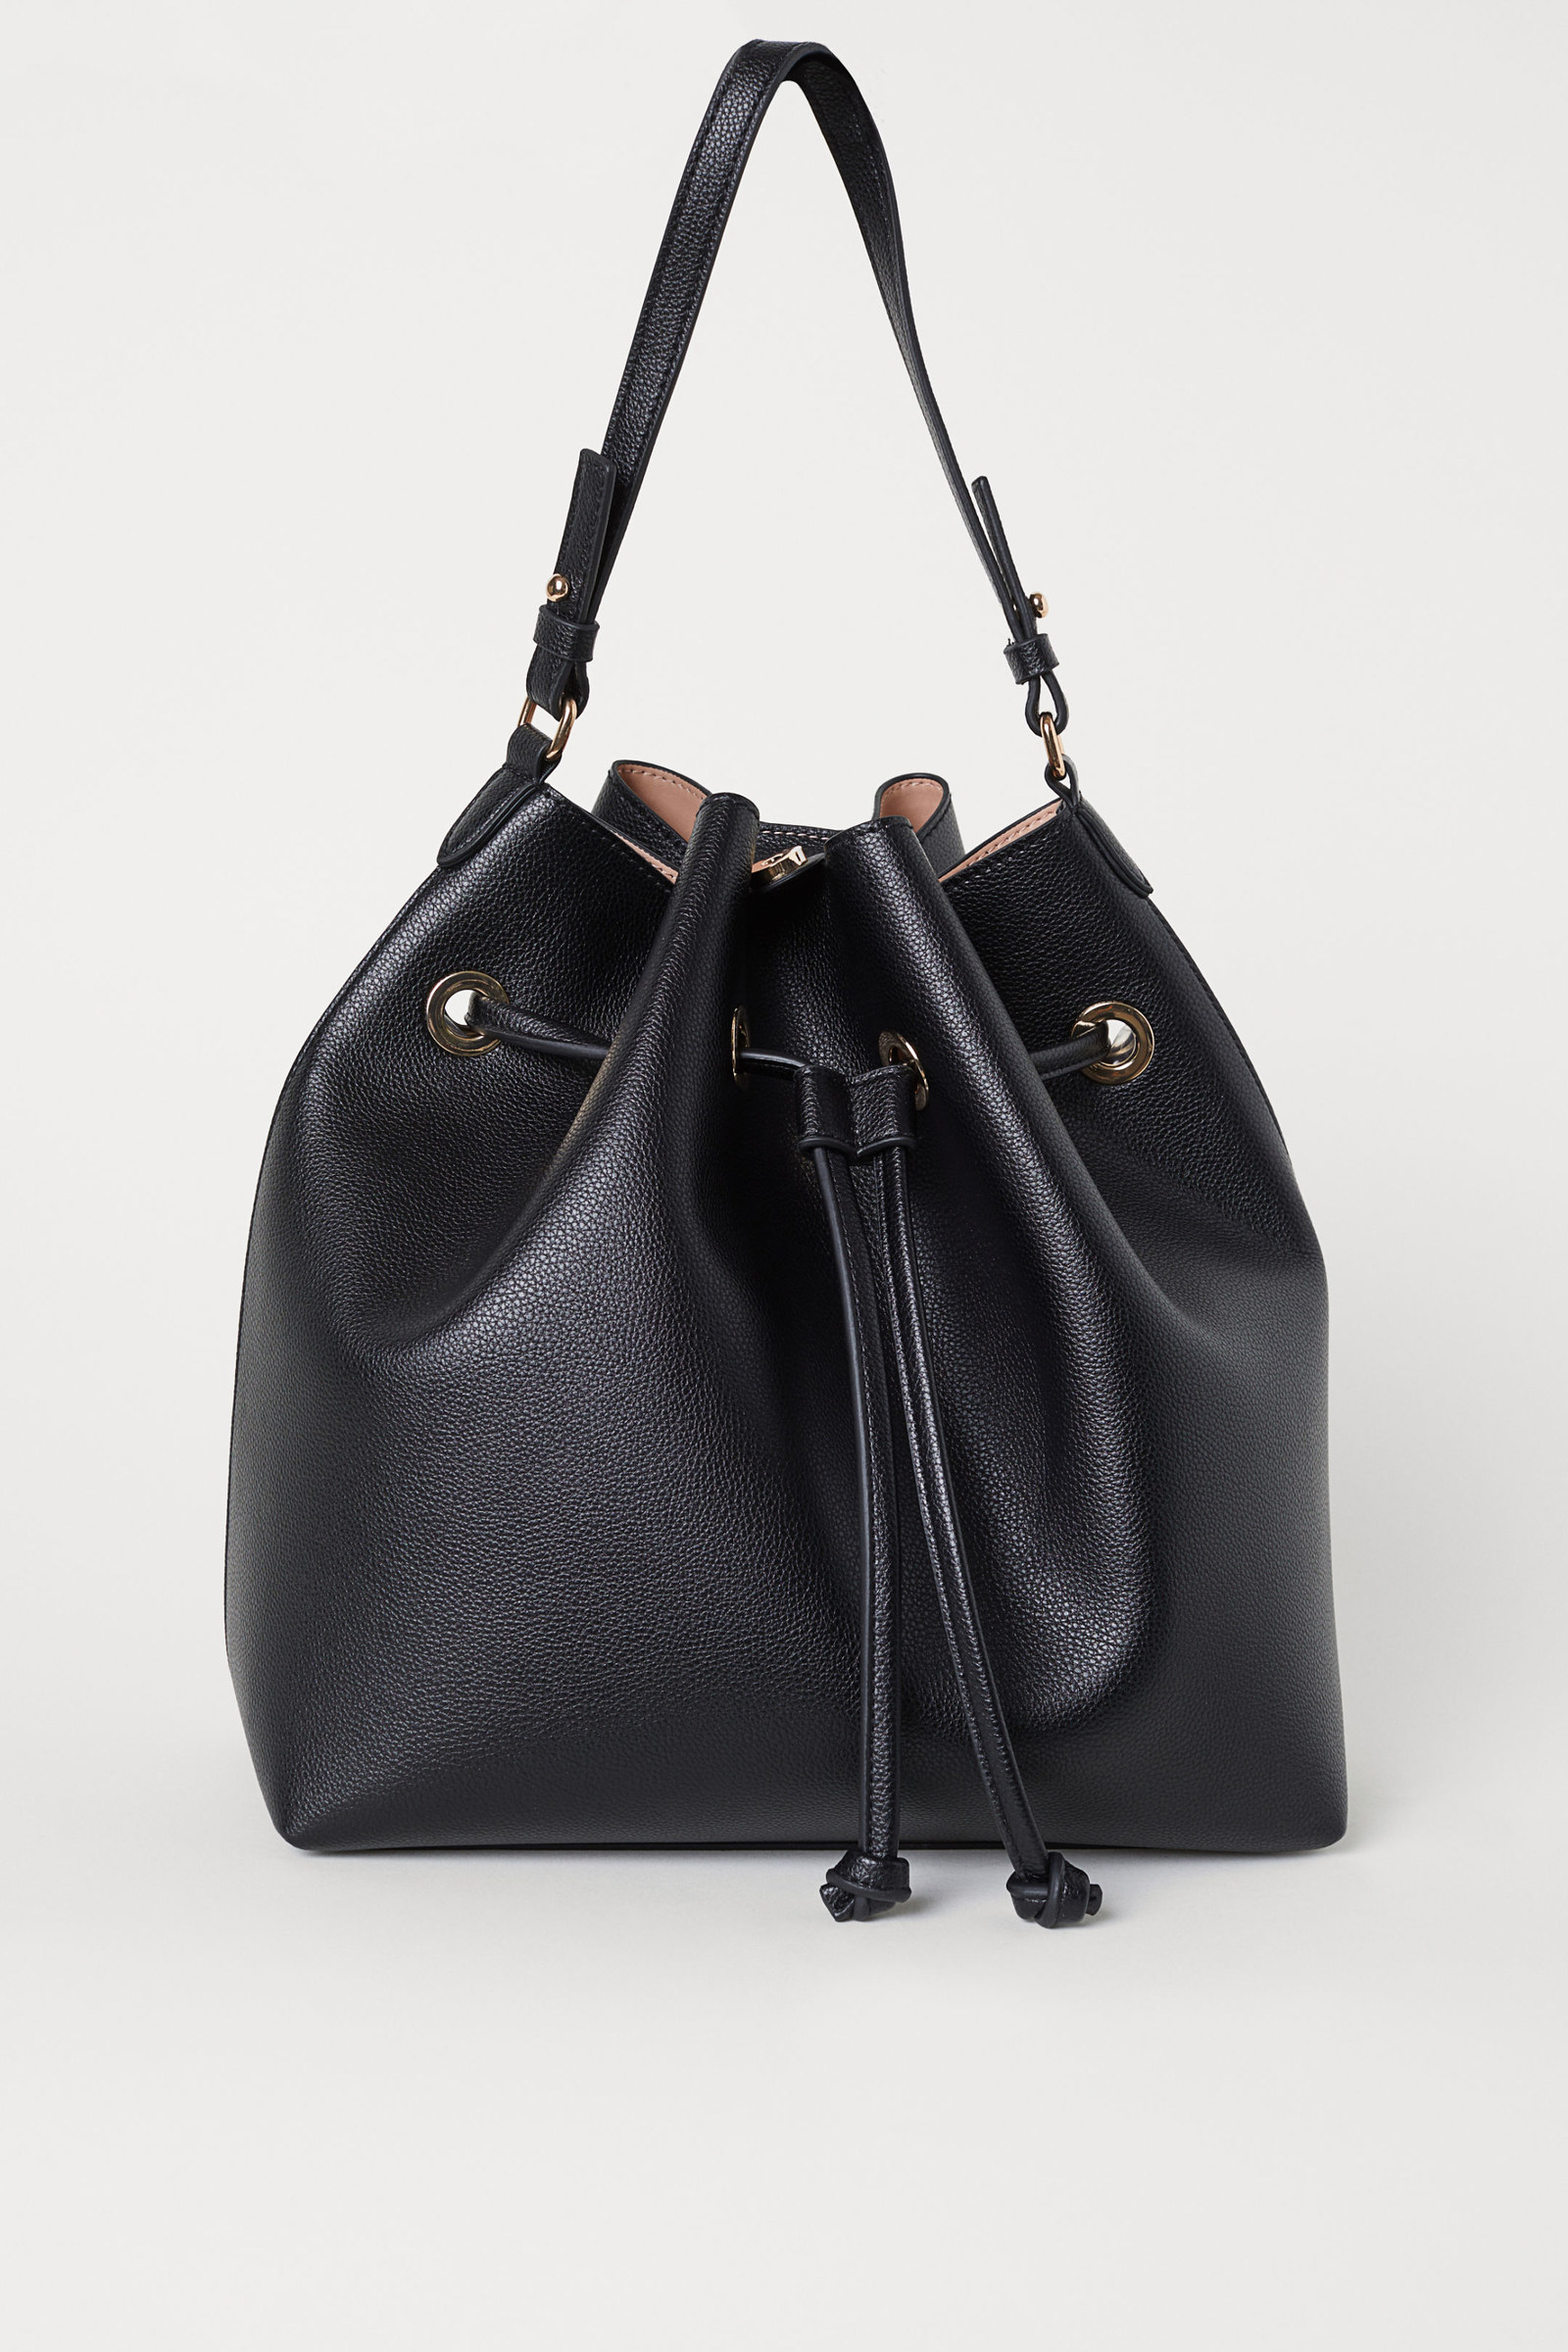 cheapest handbags online shopping